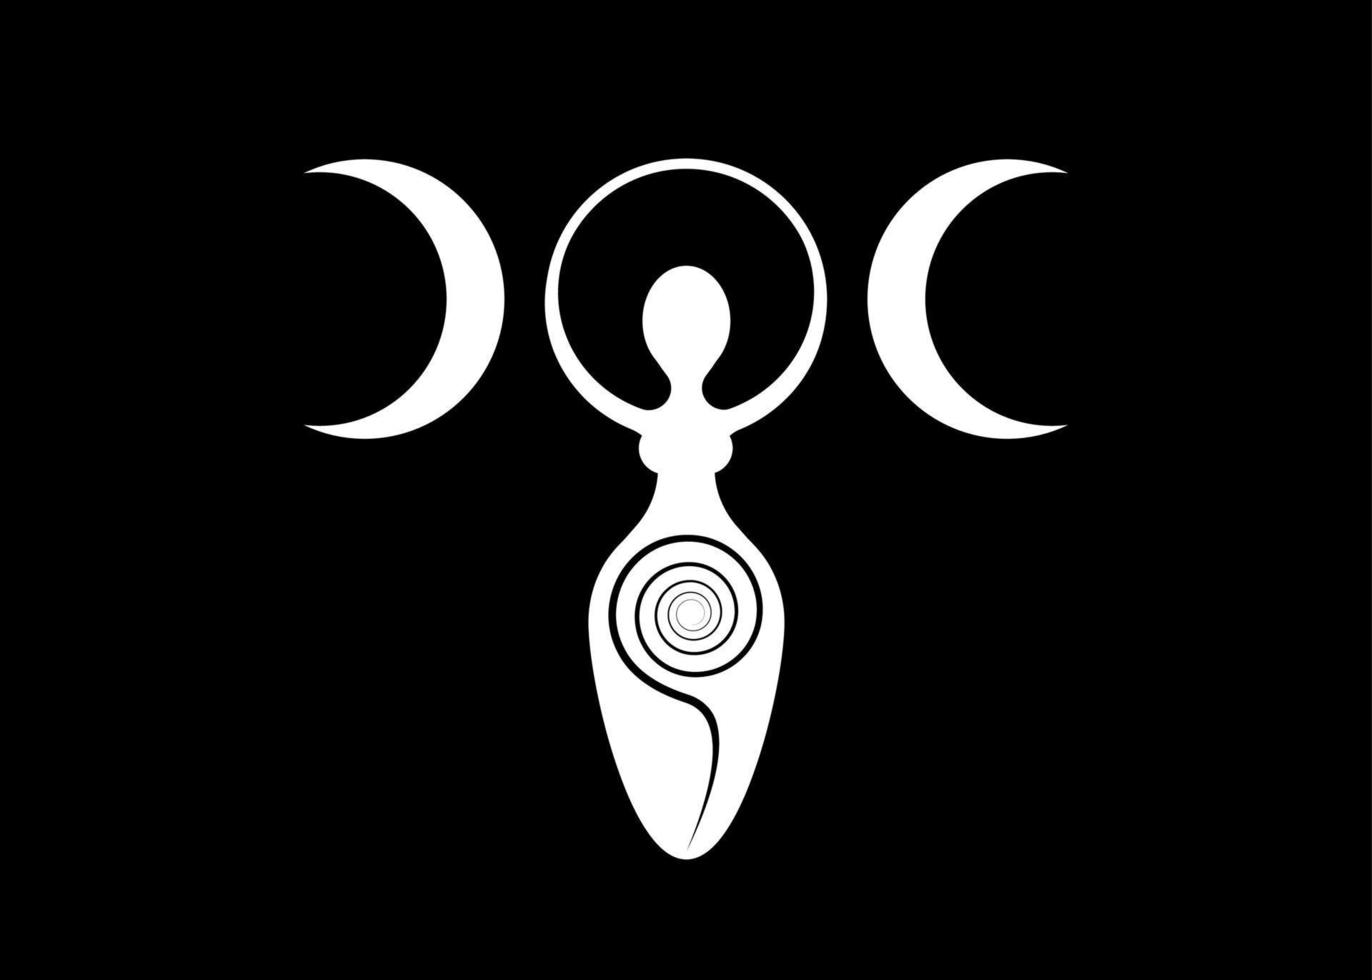 logo de la mujer wiccan diosa de la triple luna, espiral de fertilidad, símbolos paganos, ciclo de vida, muerte y renacimiento. símbolo de la madre tierra wicca de la procreación sexual, icono de signo blanco vectorial aislado en negro vector